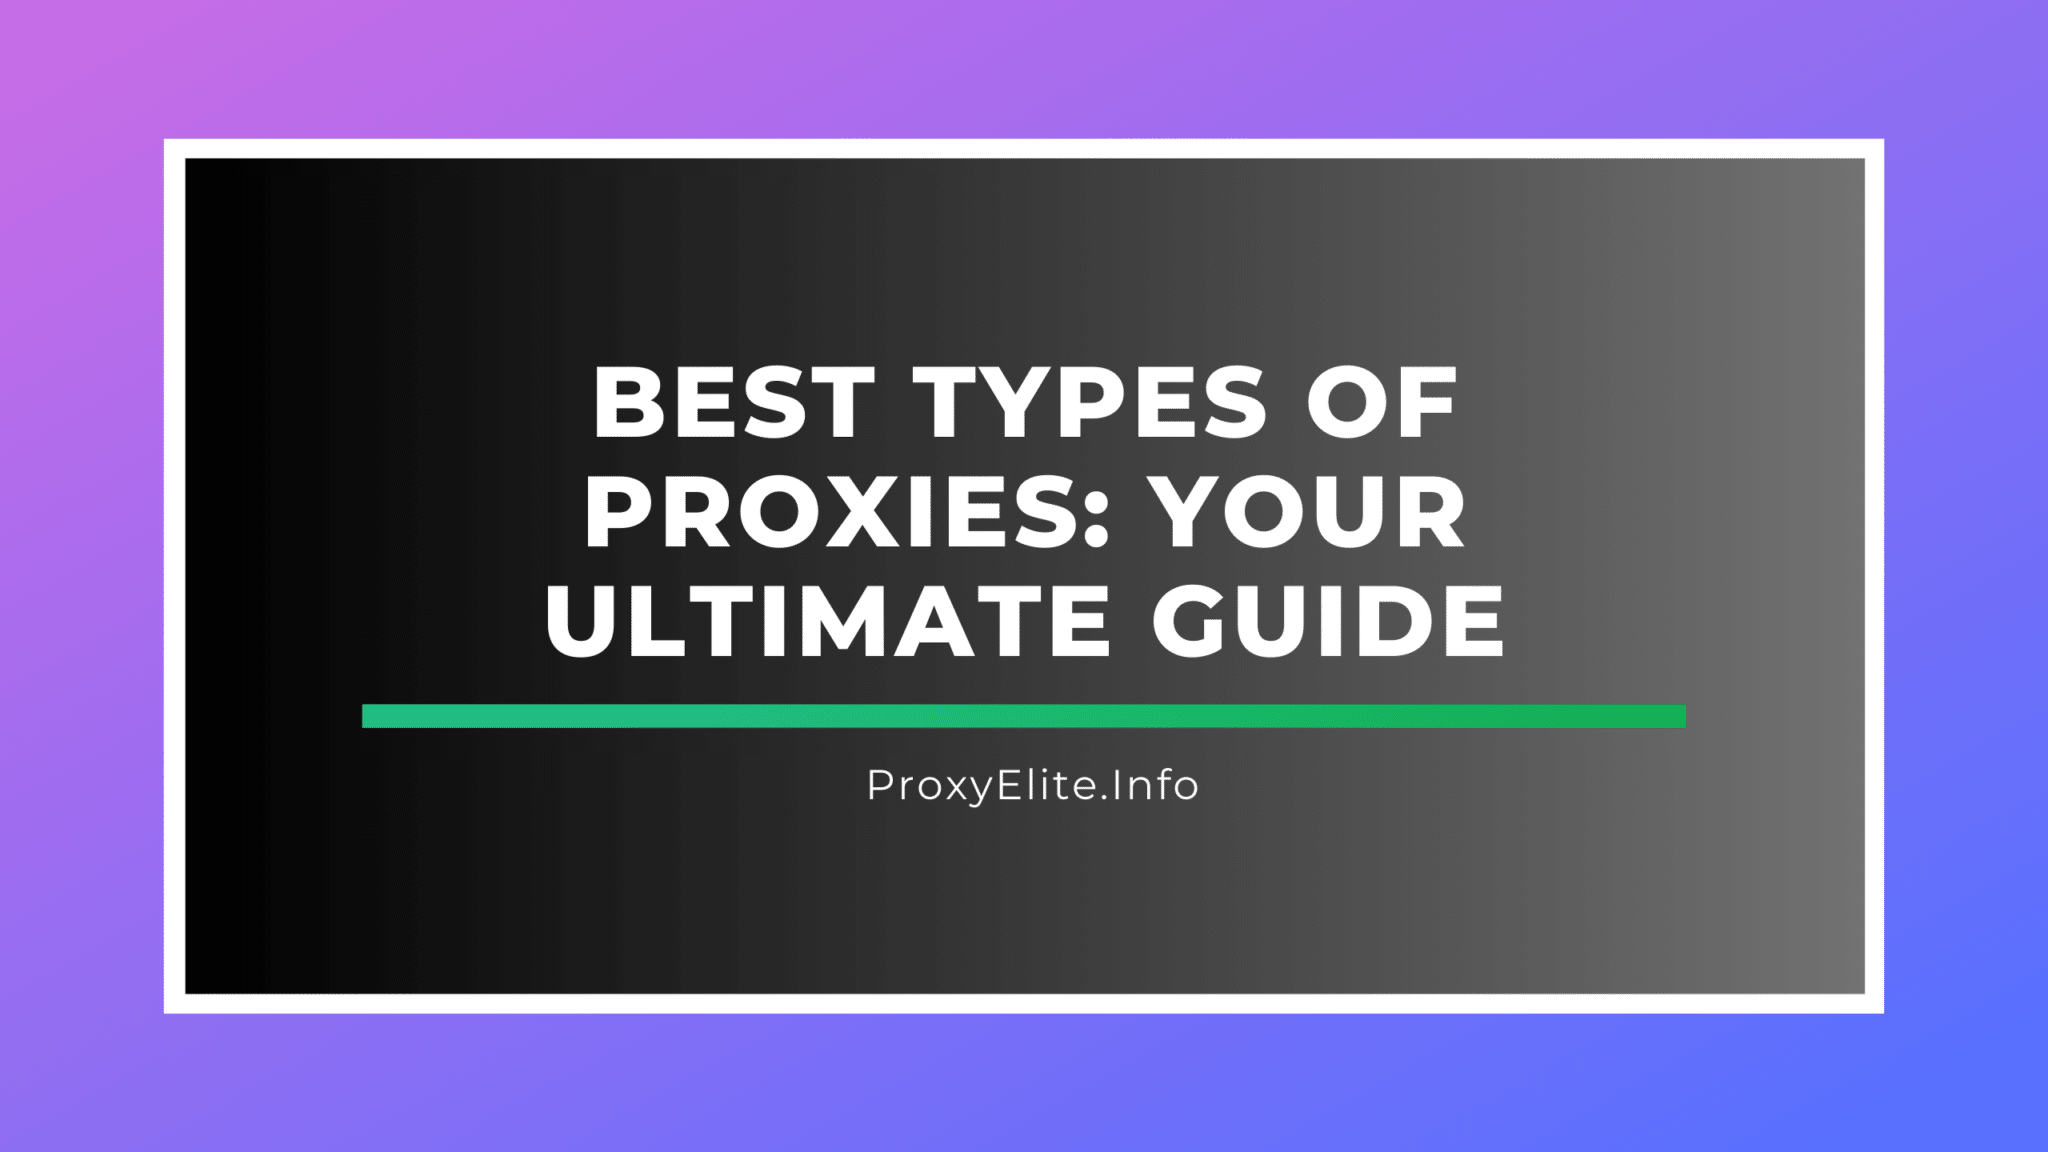 Các loại proxy tốt nhất: Hướng dẫn cơ bản cho bạn